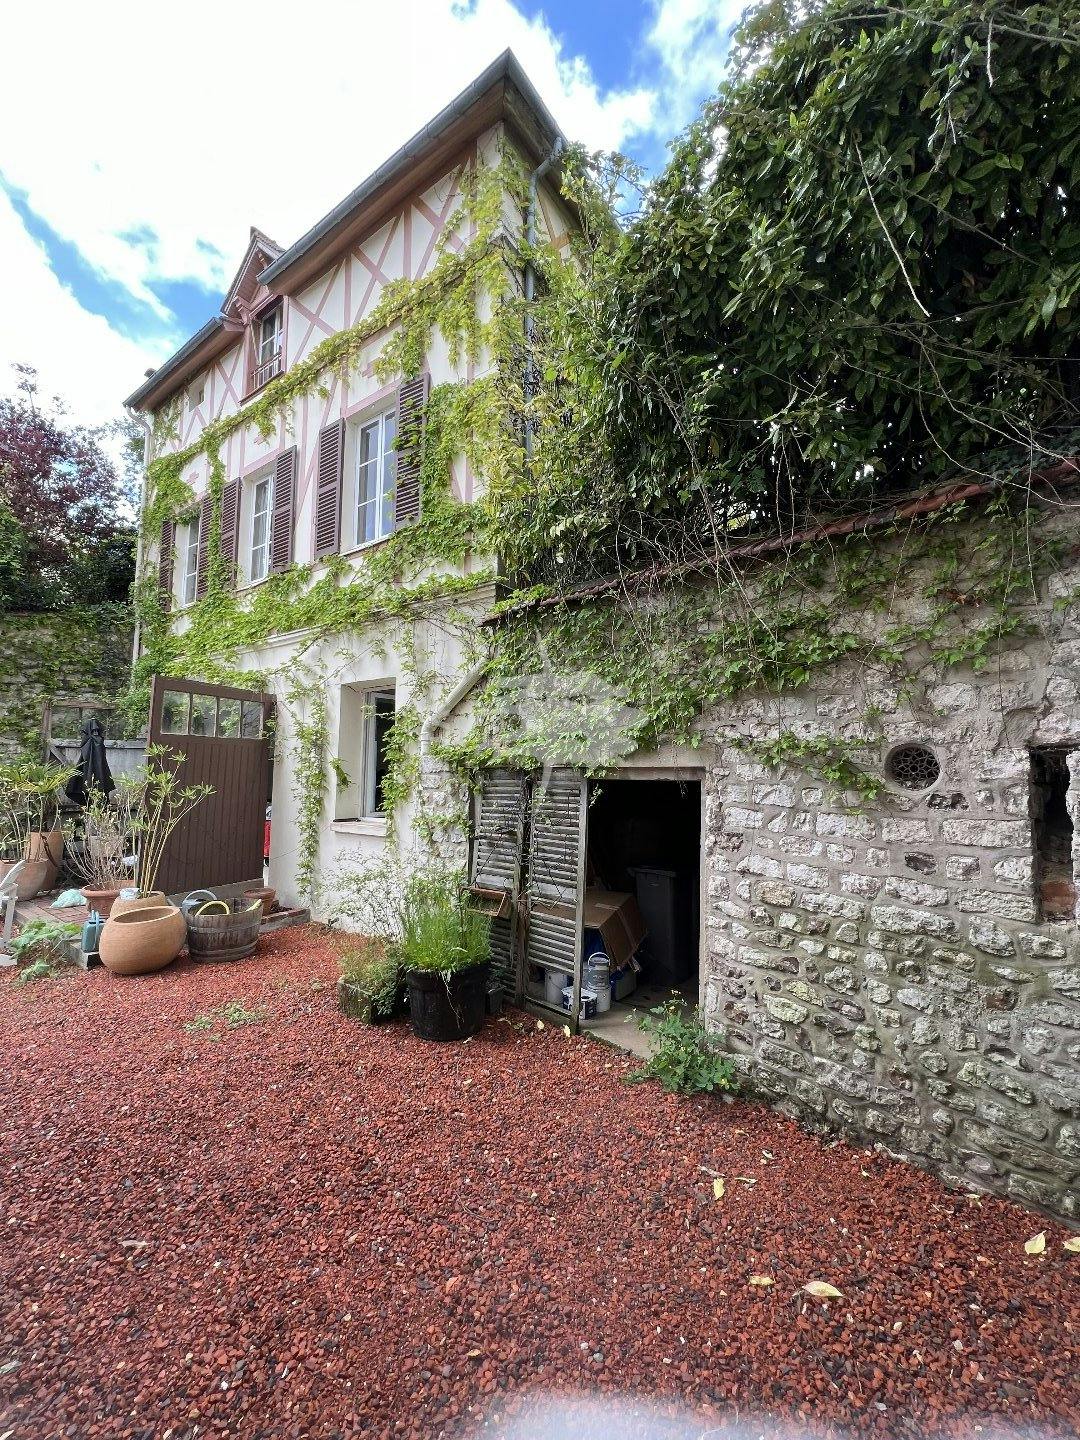 A vendre , Giverny ( 27620 )  maison XIX e   ,  9 pièces , 169 m2 habitables , 3 chambres , terrain 382  m2